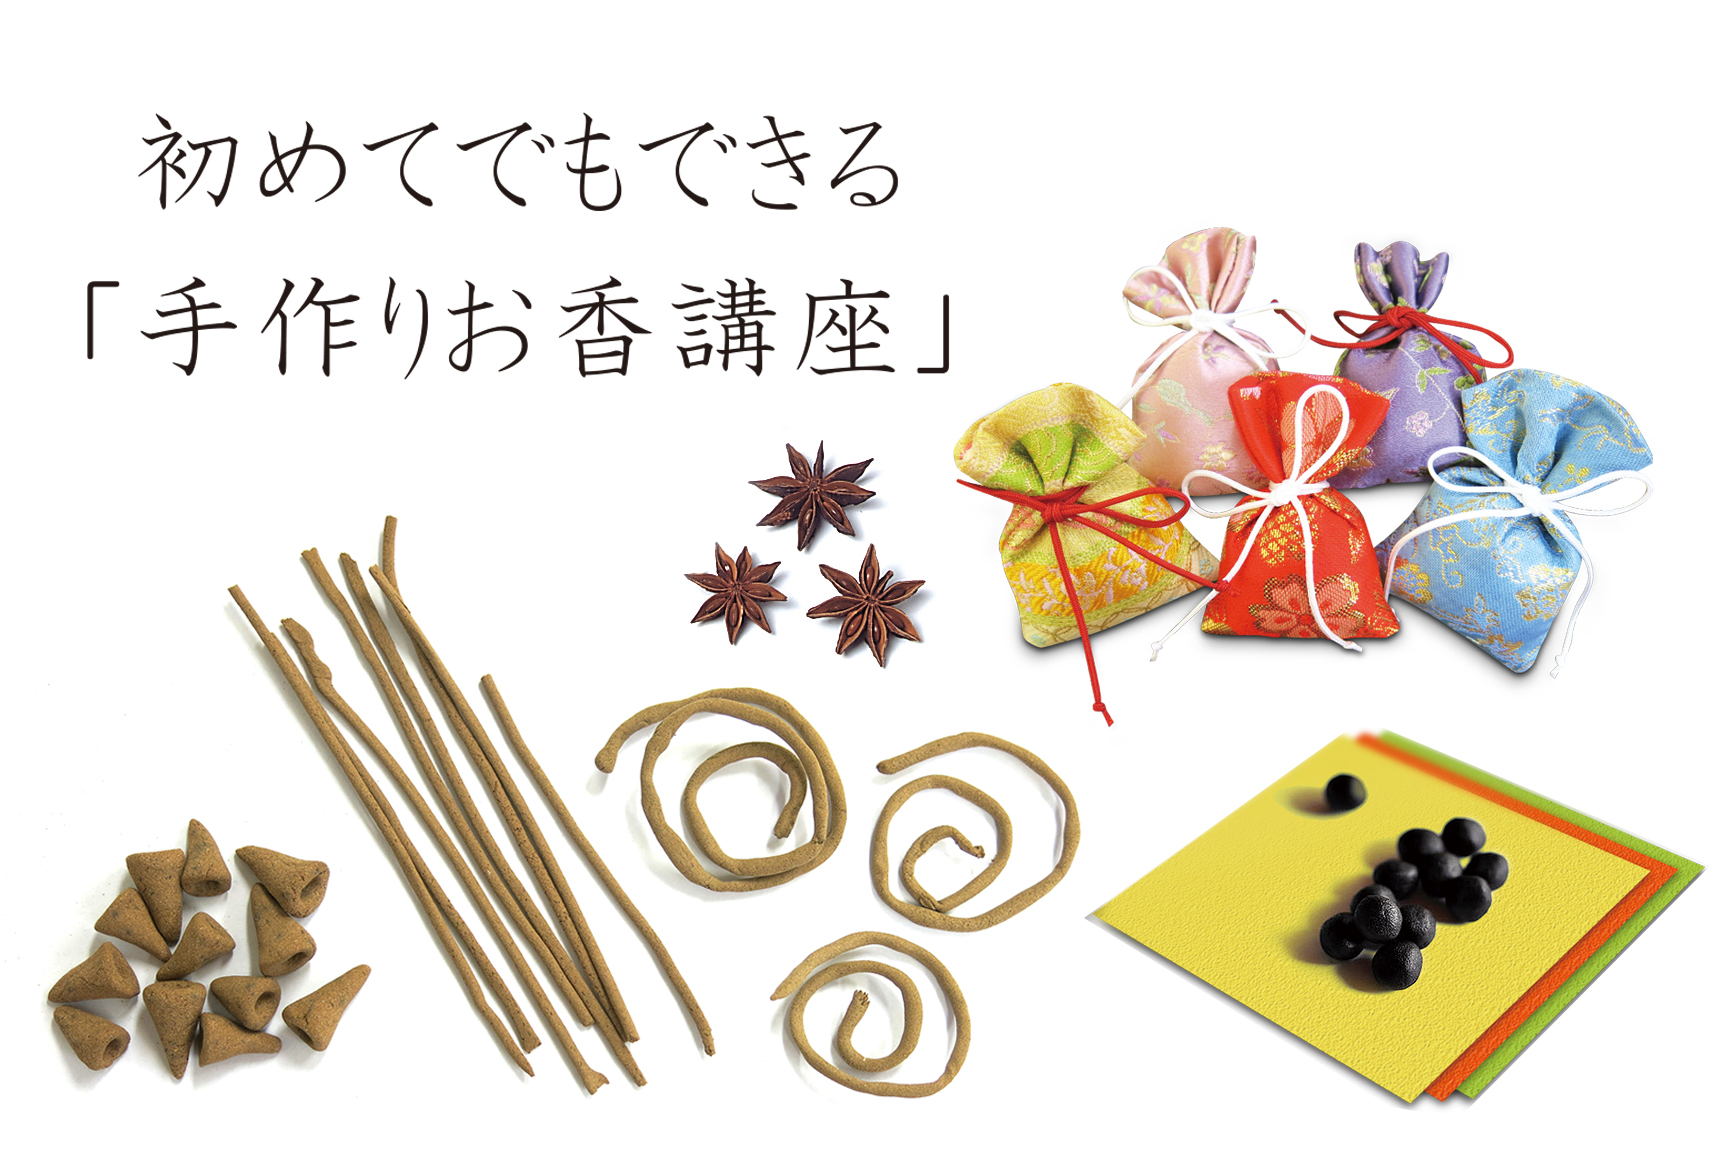 香源上野桜木店の初めてでもできる「手作りお香講座」